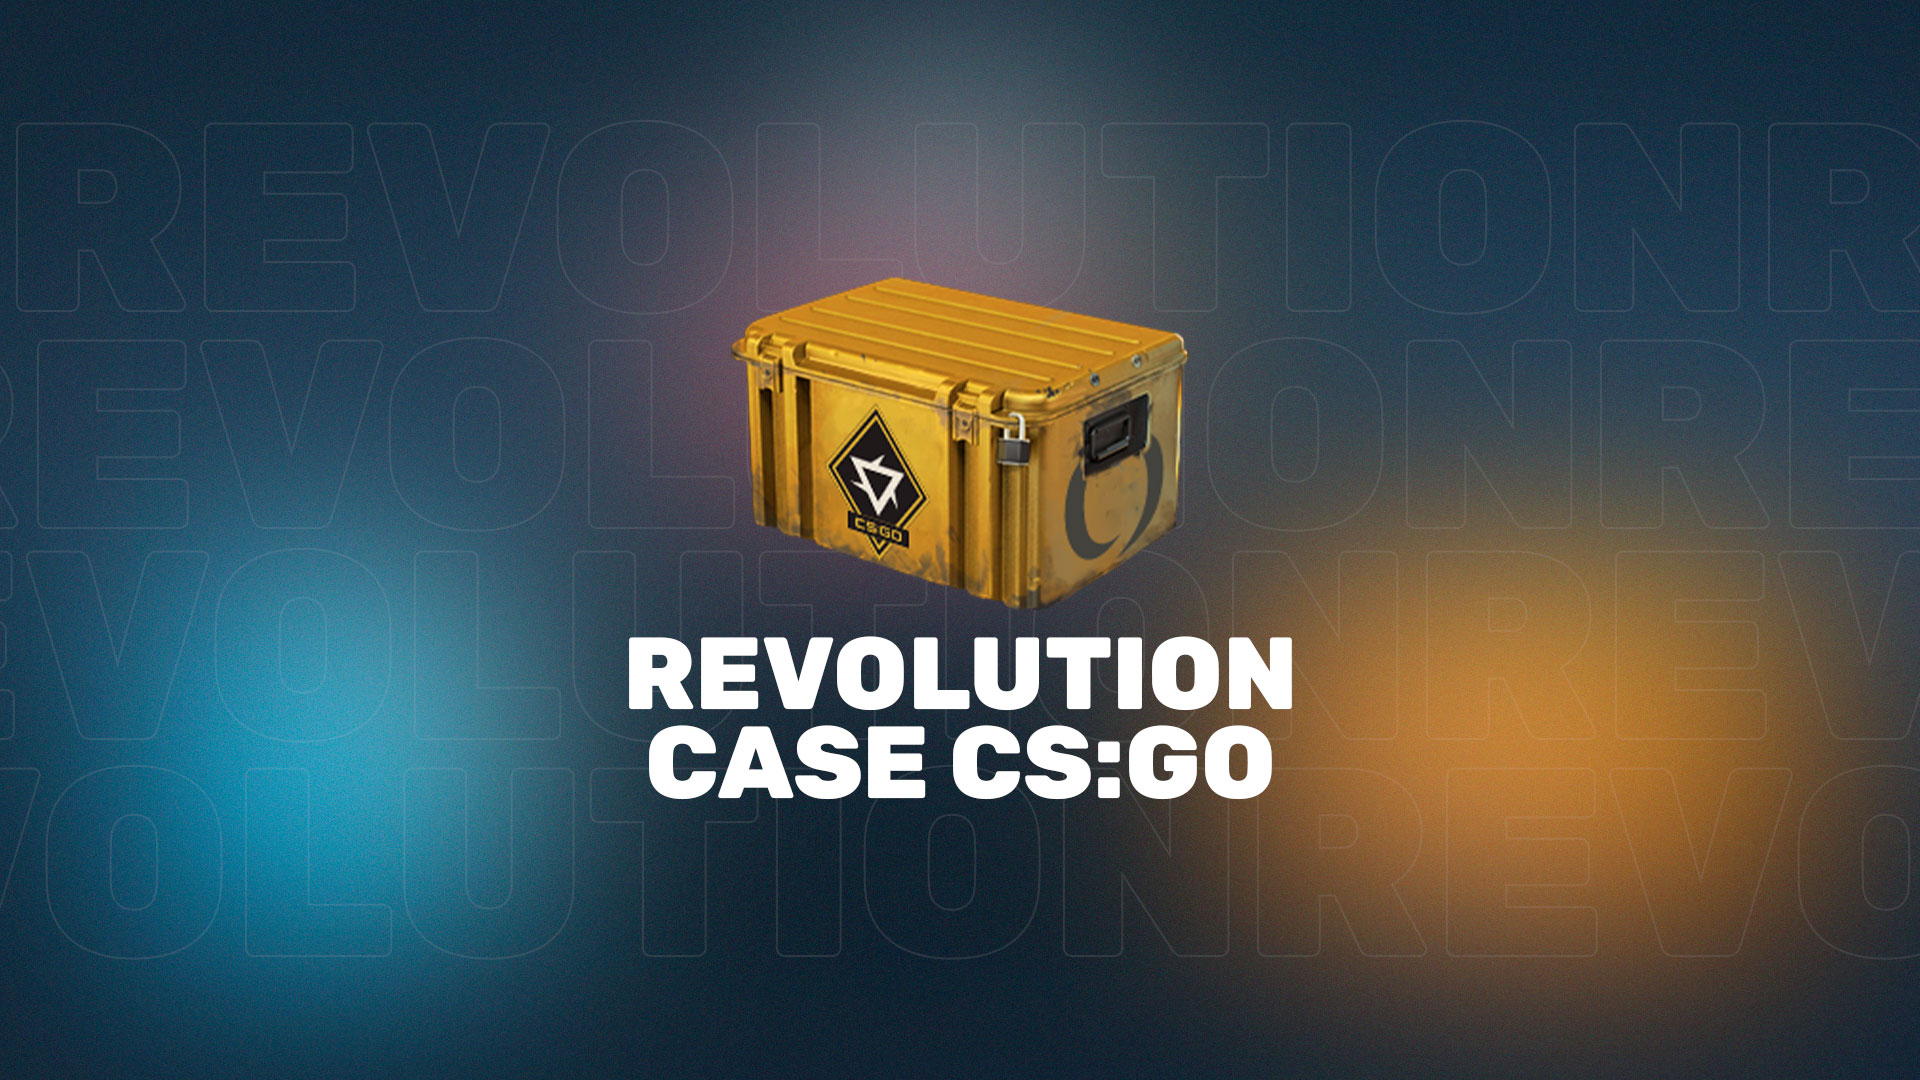 В CS:GO появился новый кейс — кейс Revolution (Революция) с большим количеством новых скинов на различные оружия в игре.